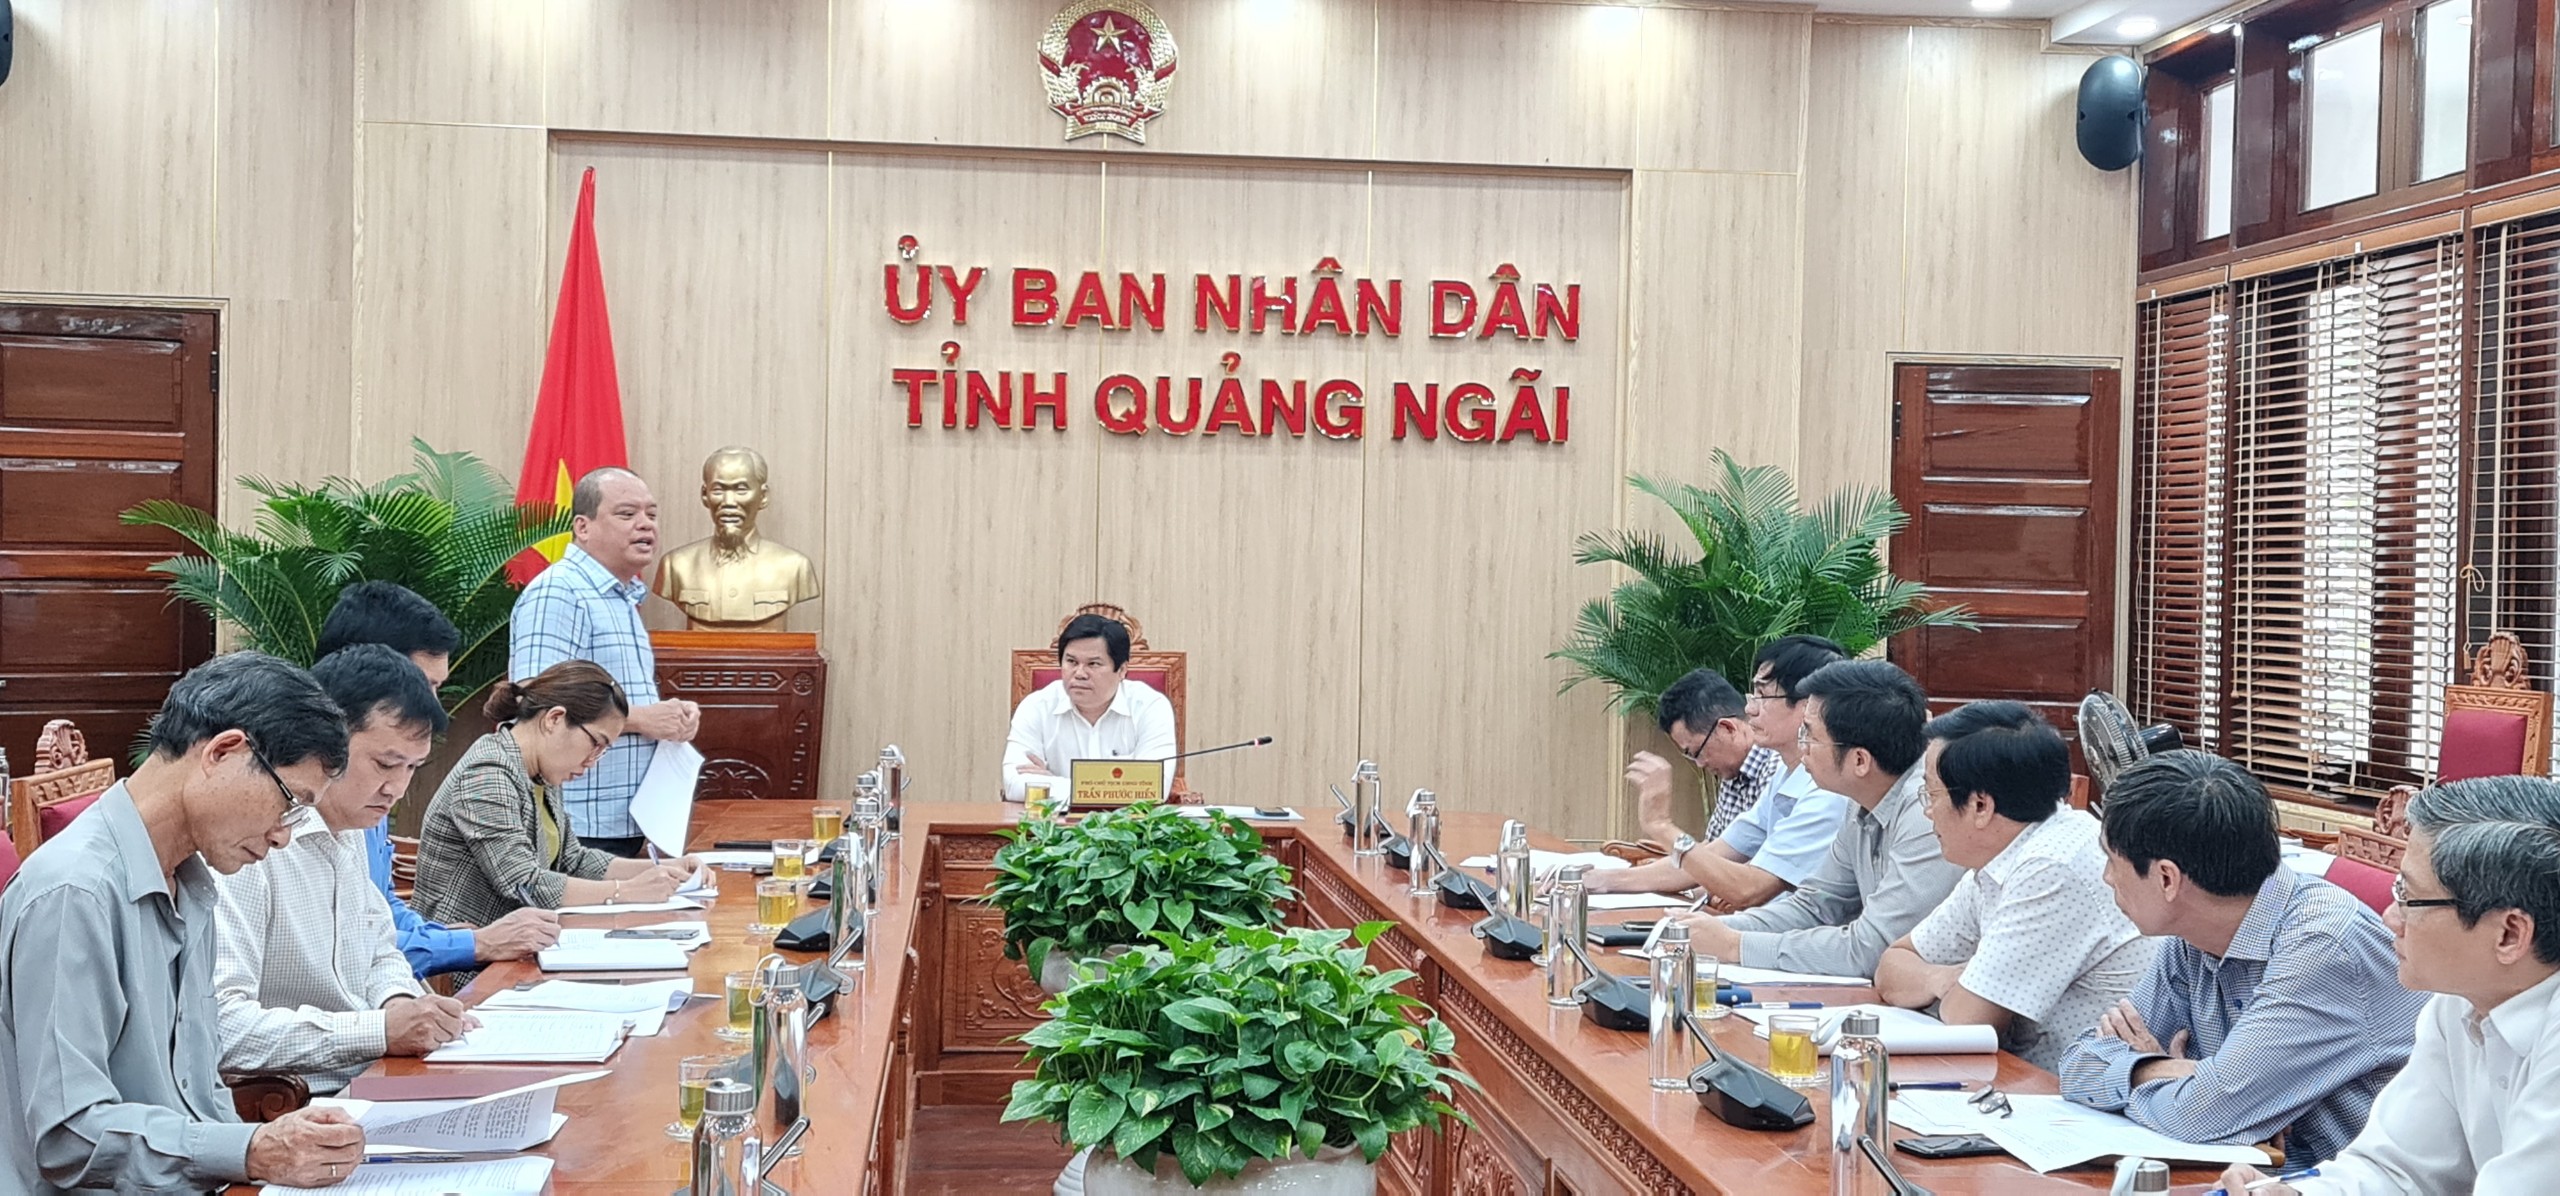 Buổi họp của Hội đồng đánh giá lựa chọn chủ đầu tư xây dựng hạ tầng kỹ thuật các cụm công nghiệp trên địa bàn tỉnh Quảng Ngãi